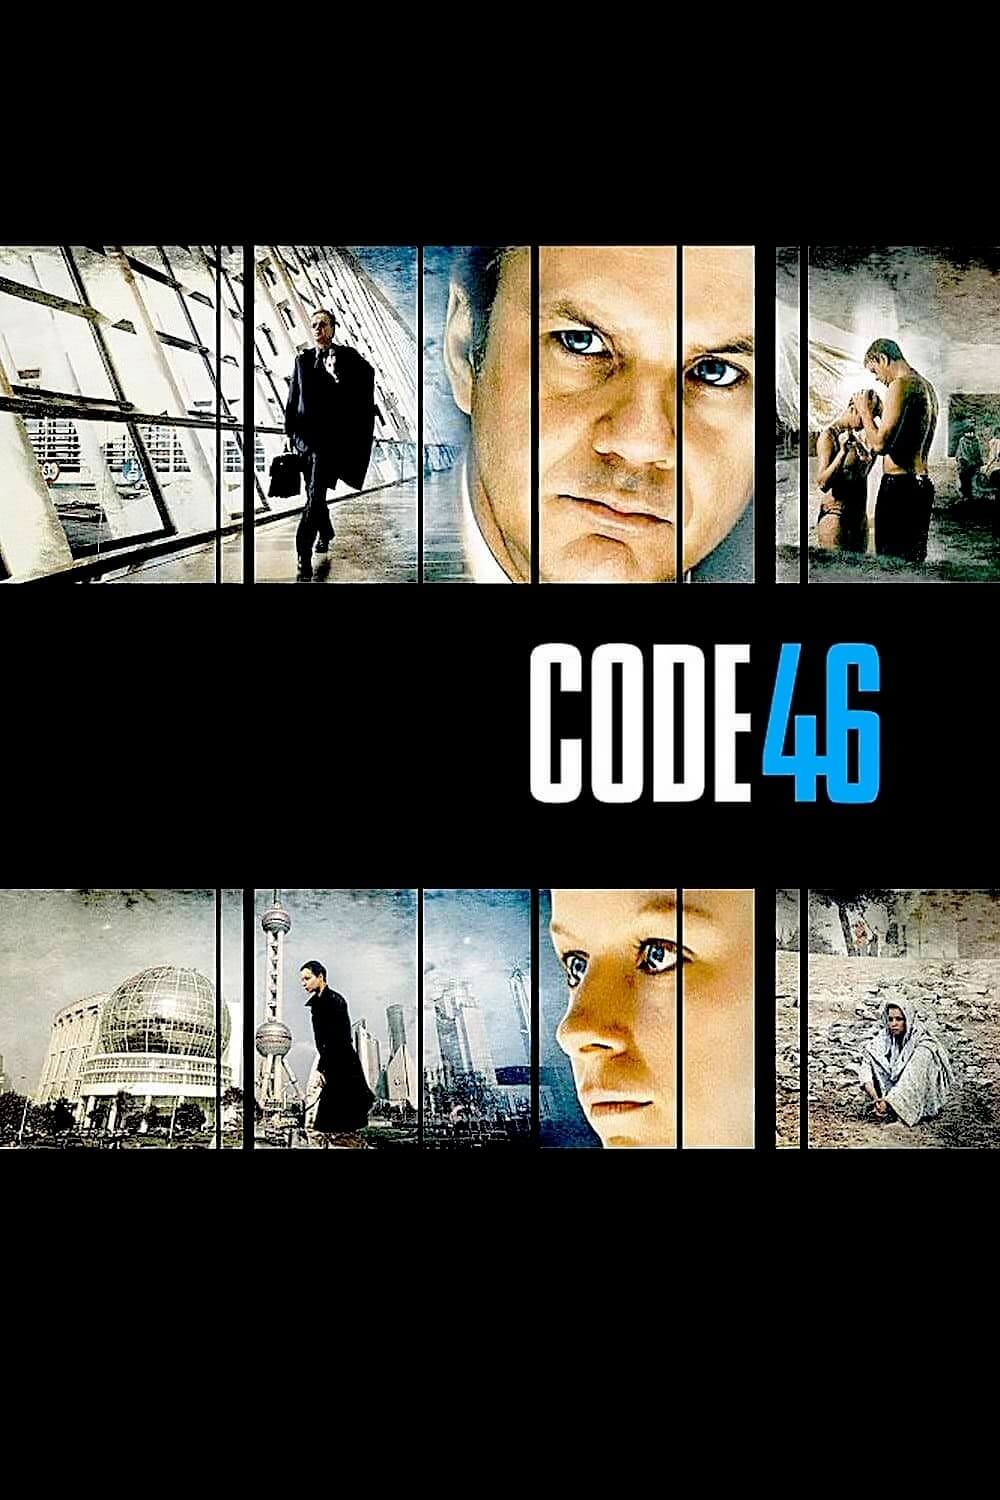 کد ۴۶ (Code 46)